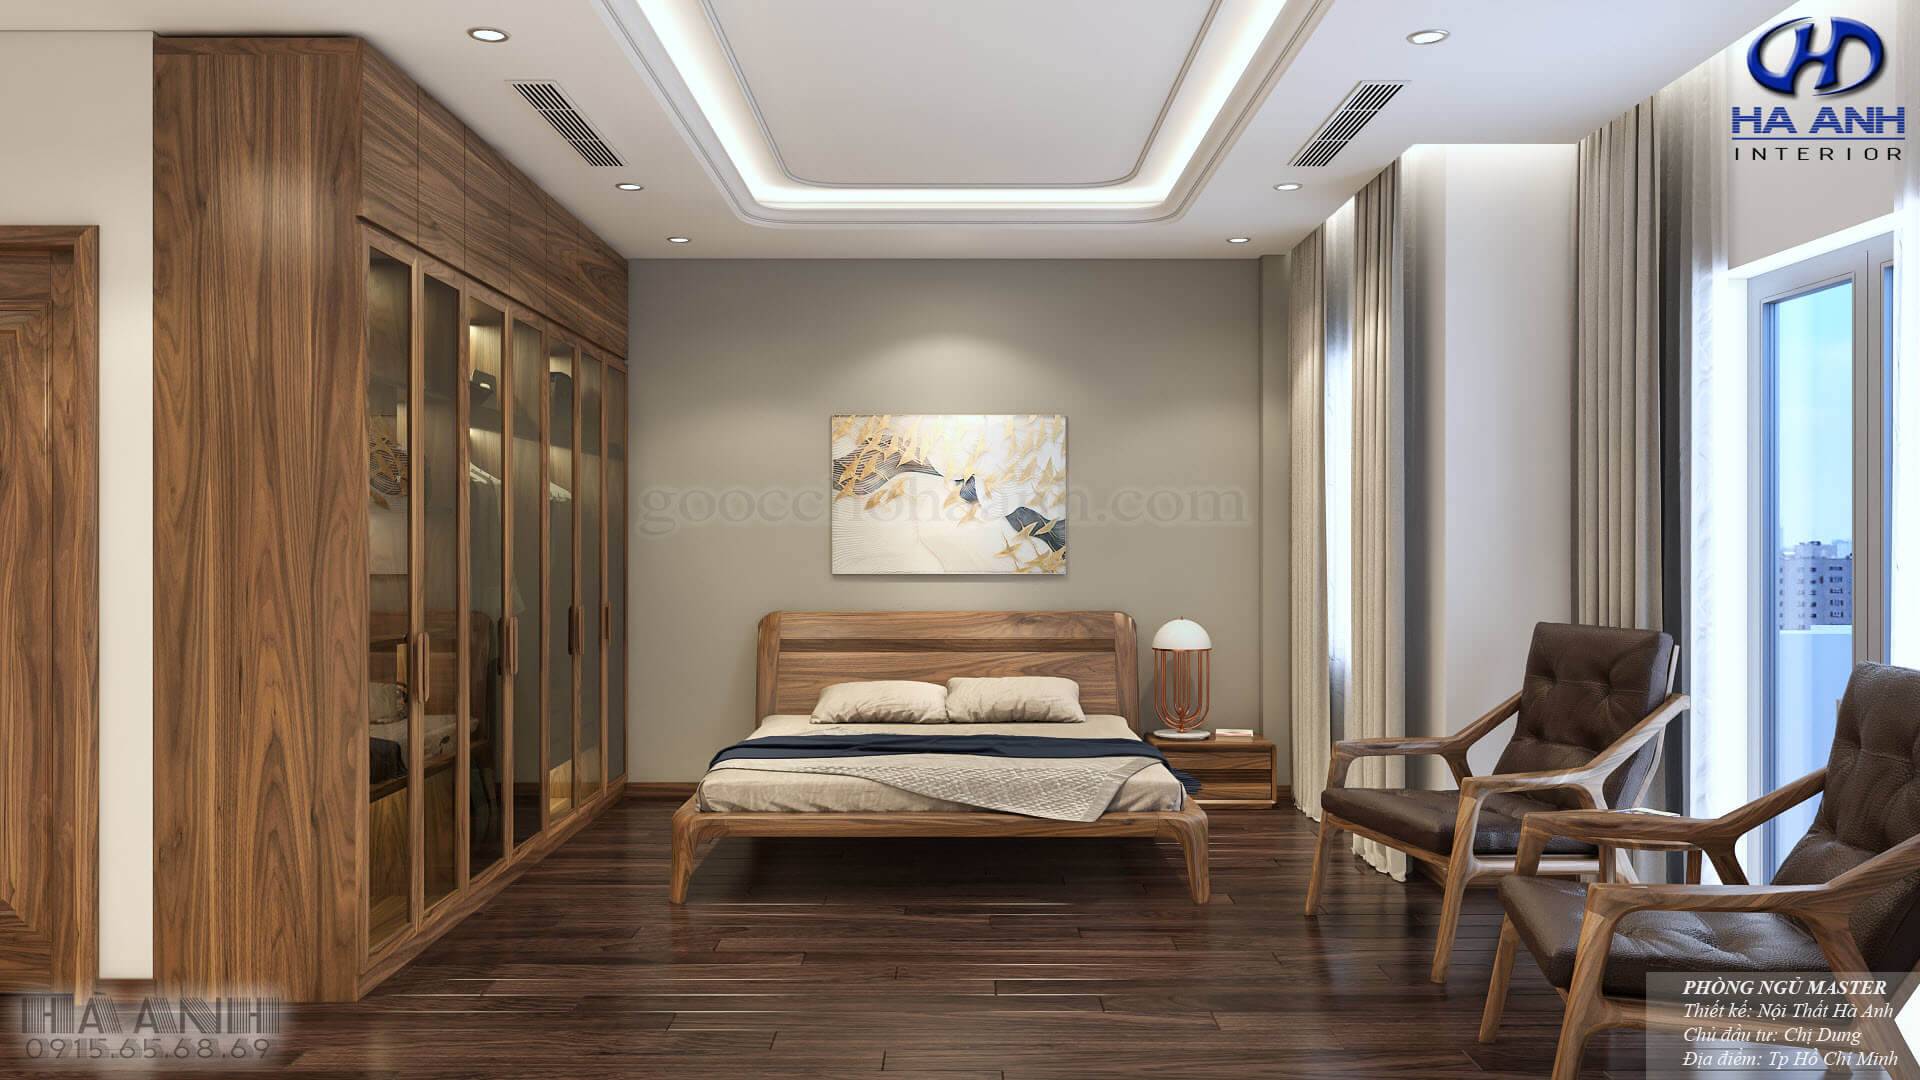 Thiết kế phòng ngủ gỗ óc chó theo phong cách đơn giản, nhẹ nhàng